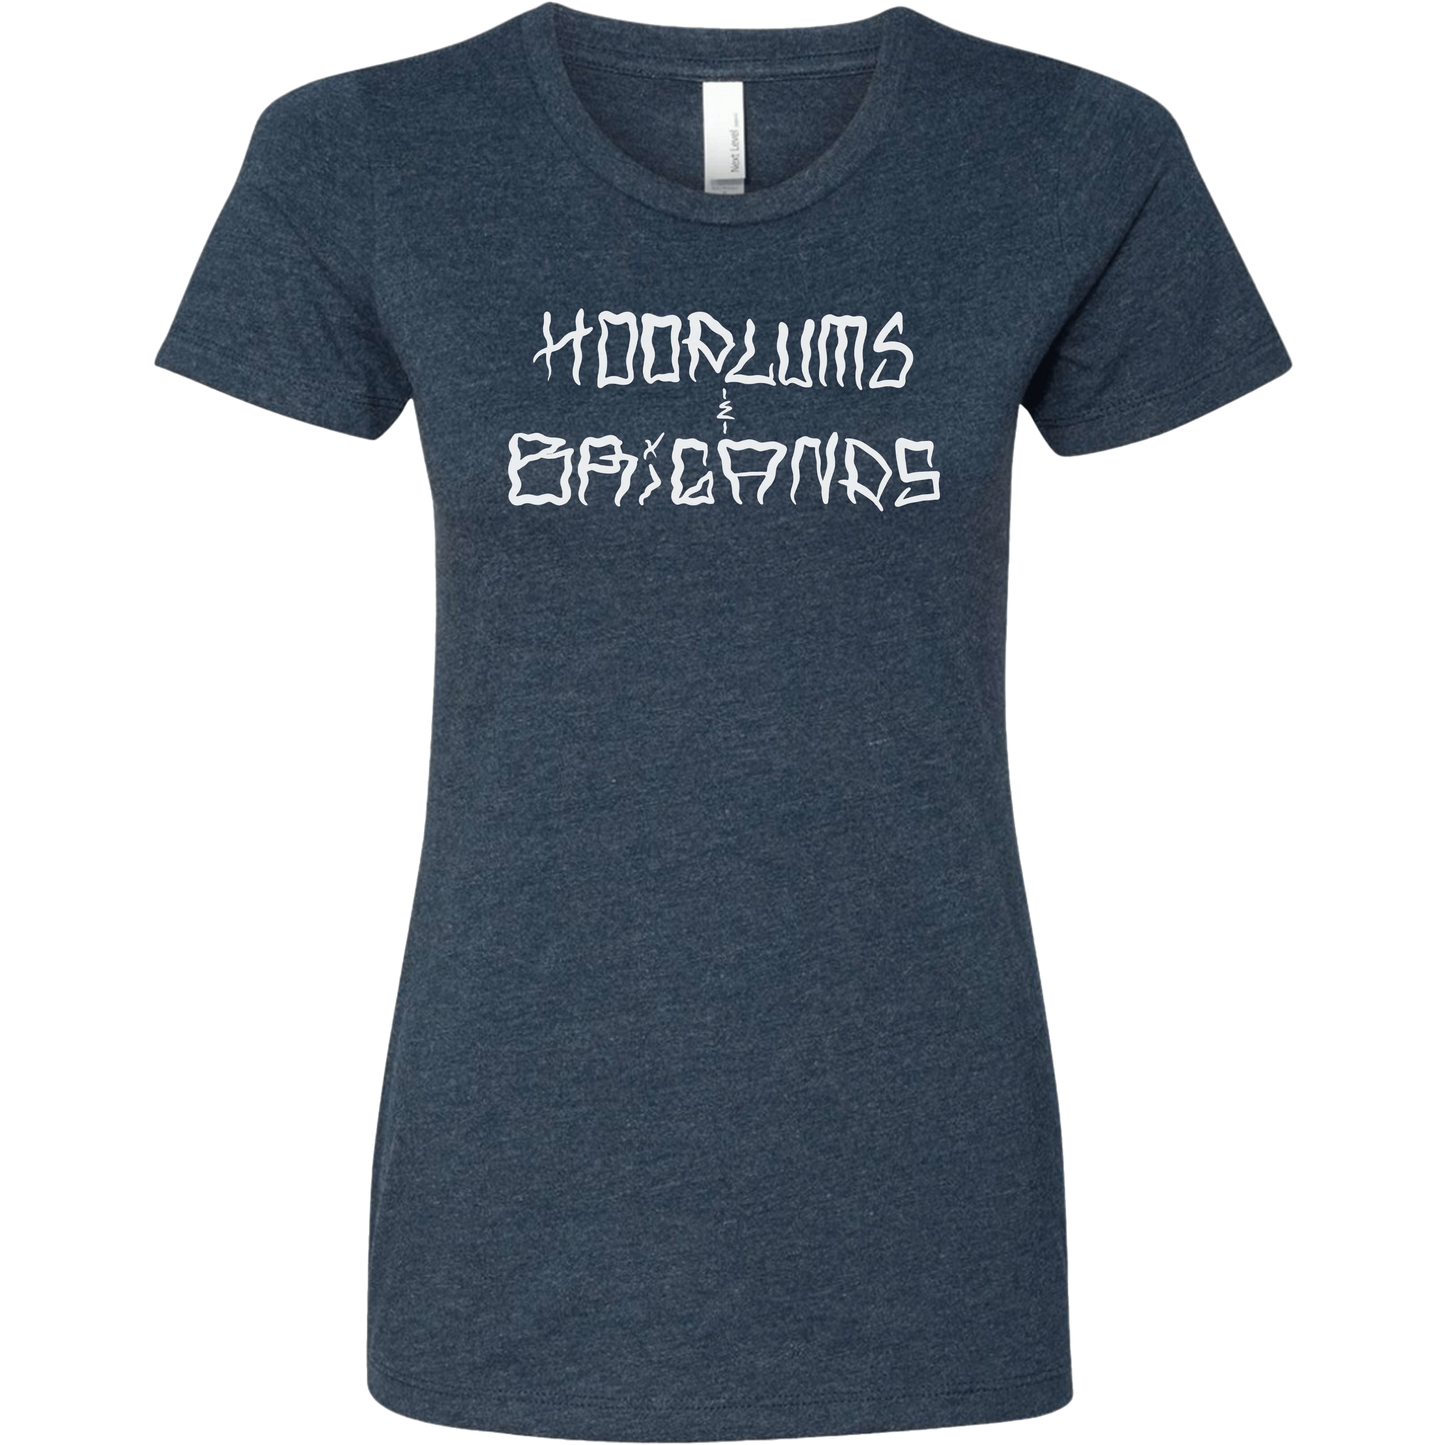 Hoodlums & Brigands Logo Women's T-Shirt - hdlm.brgnd